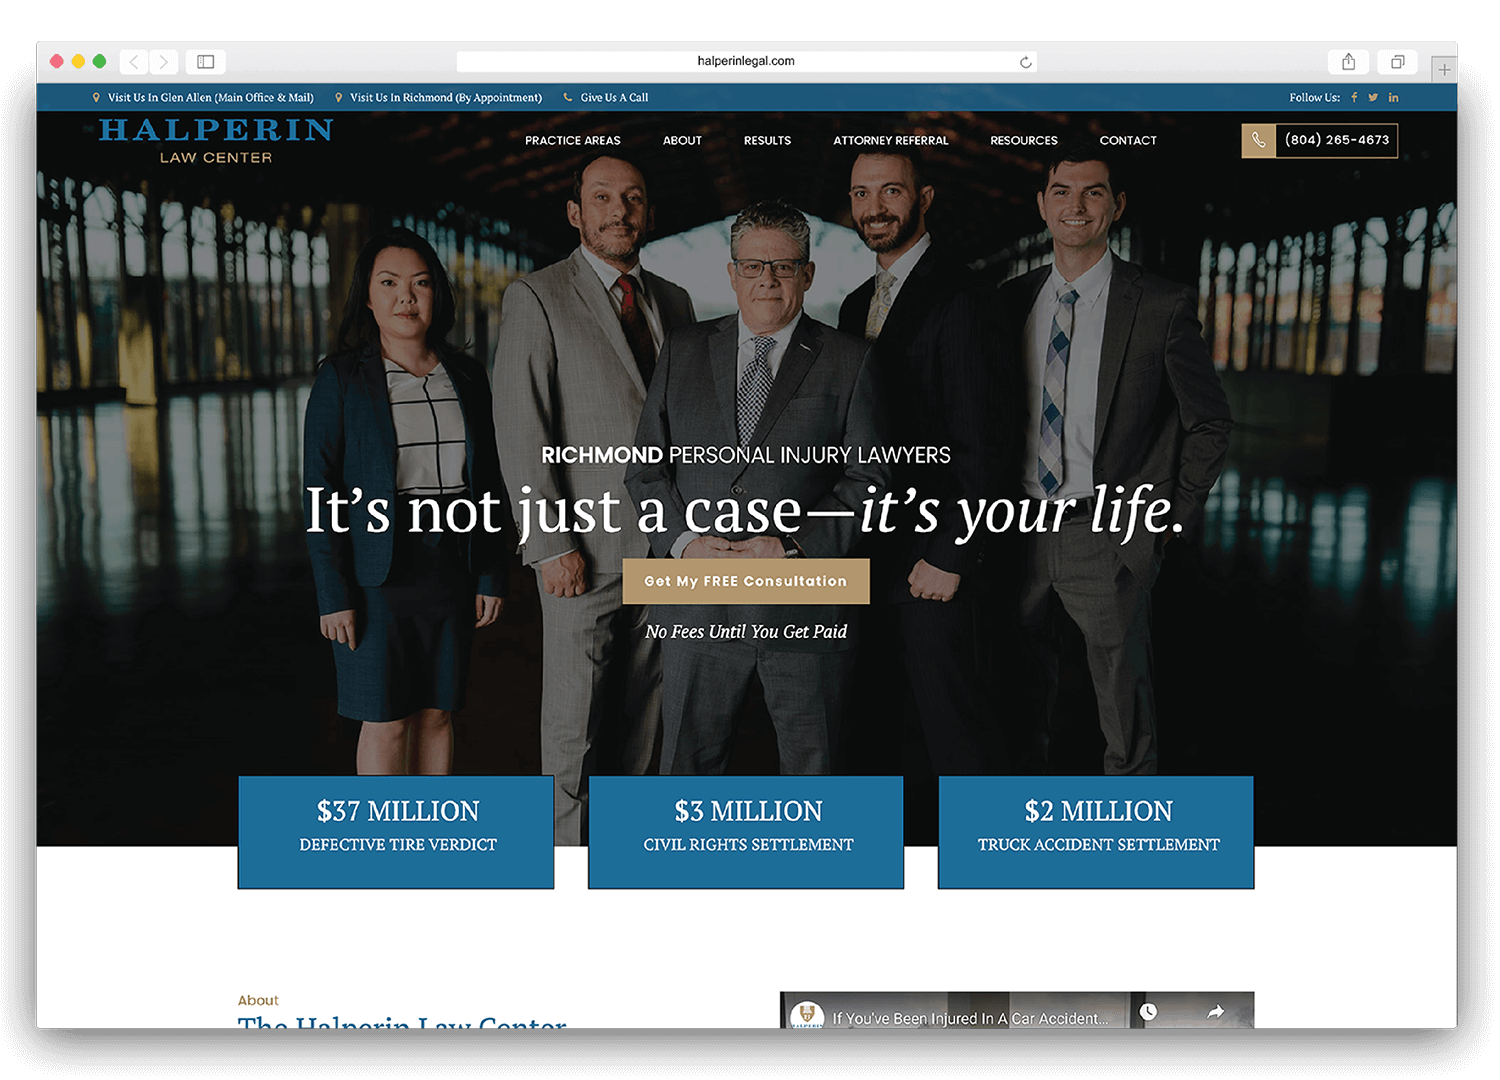 homepage of halperinlegal.com